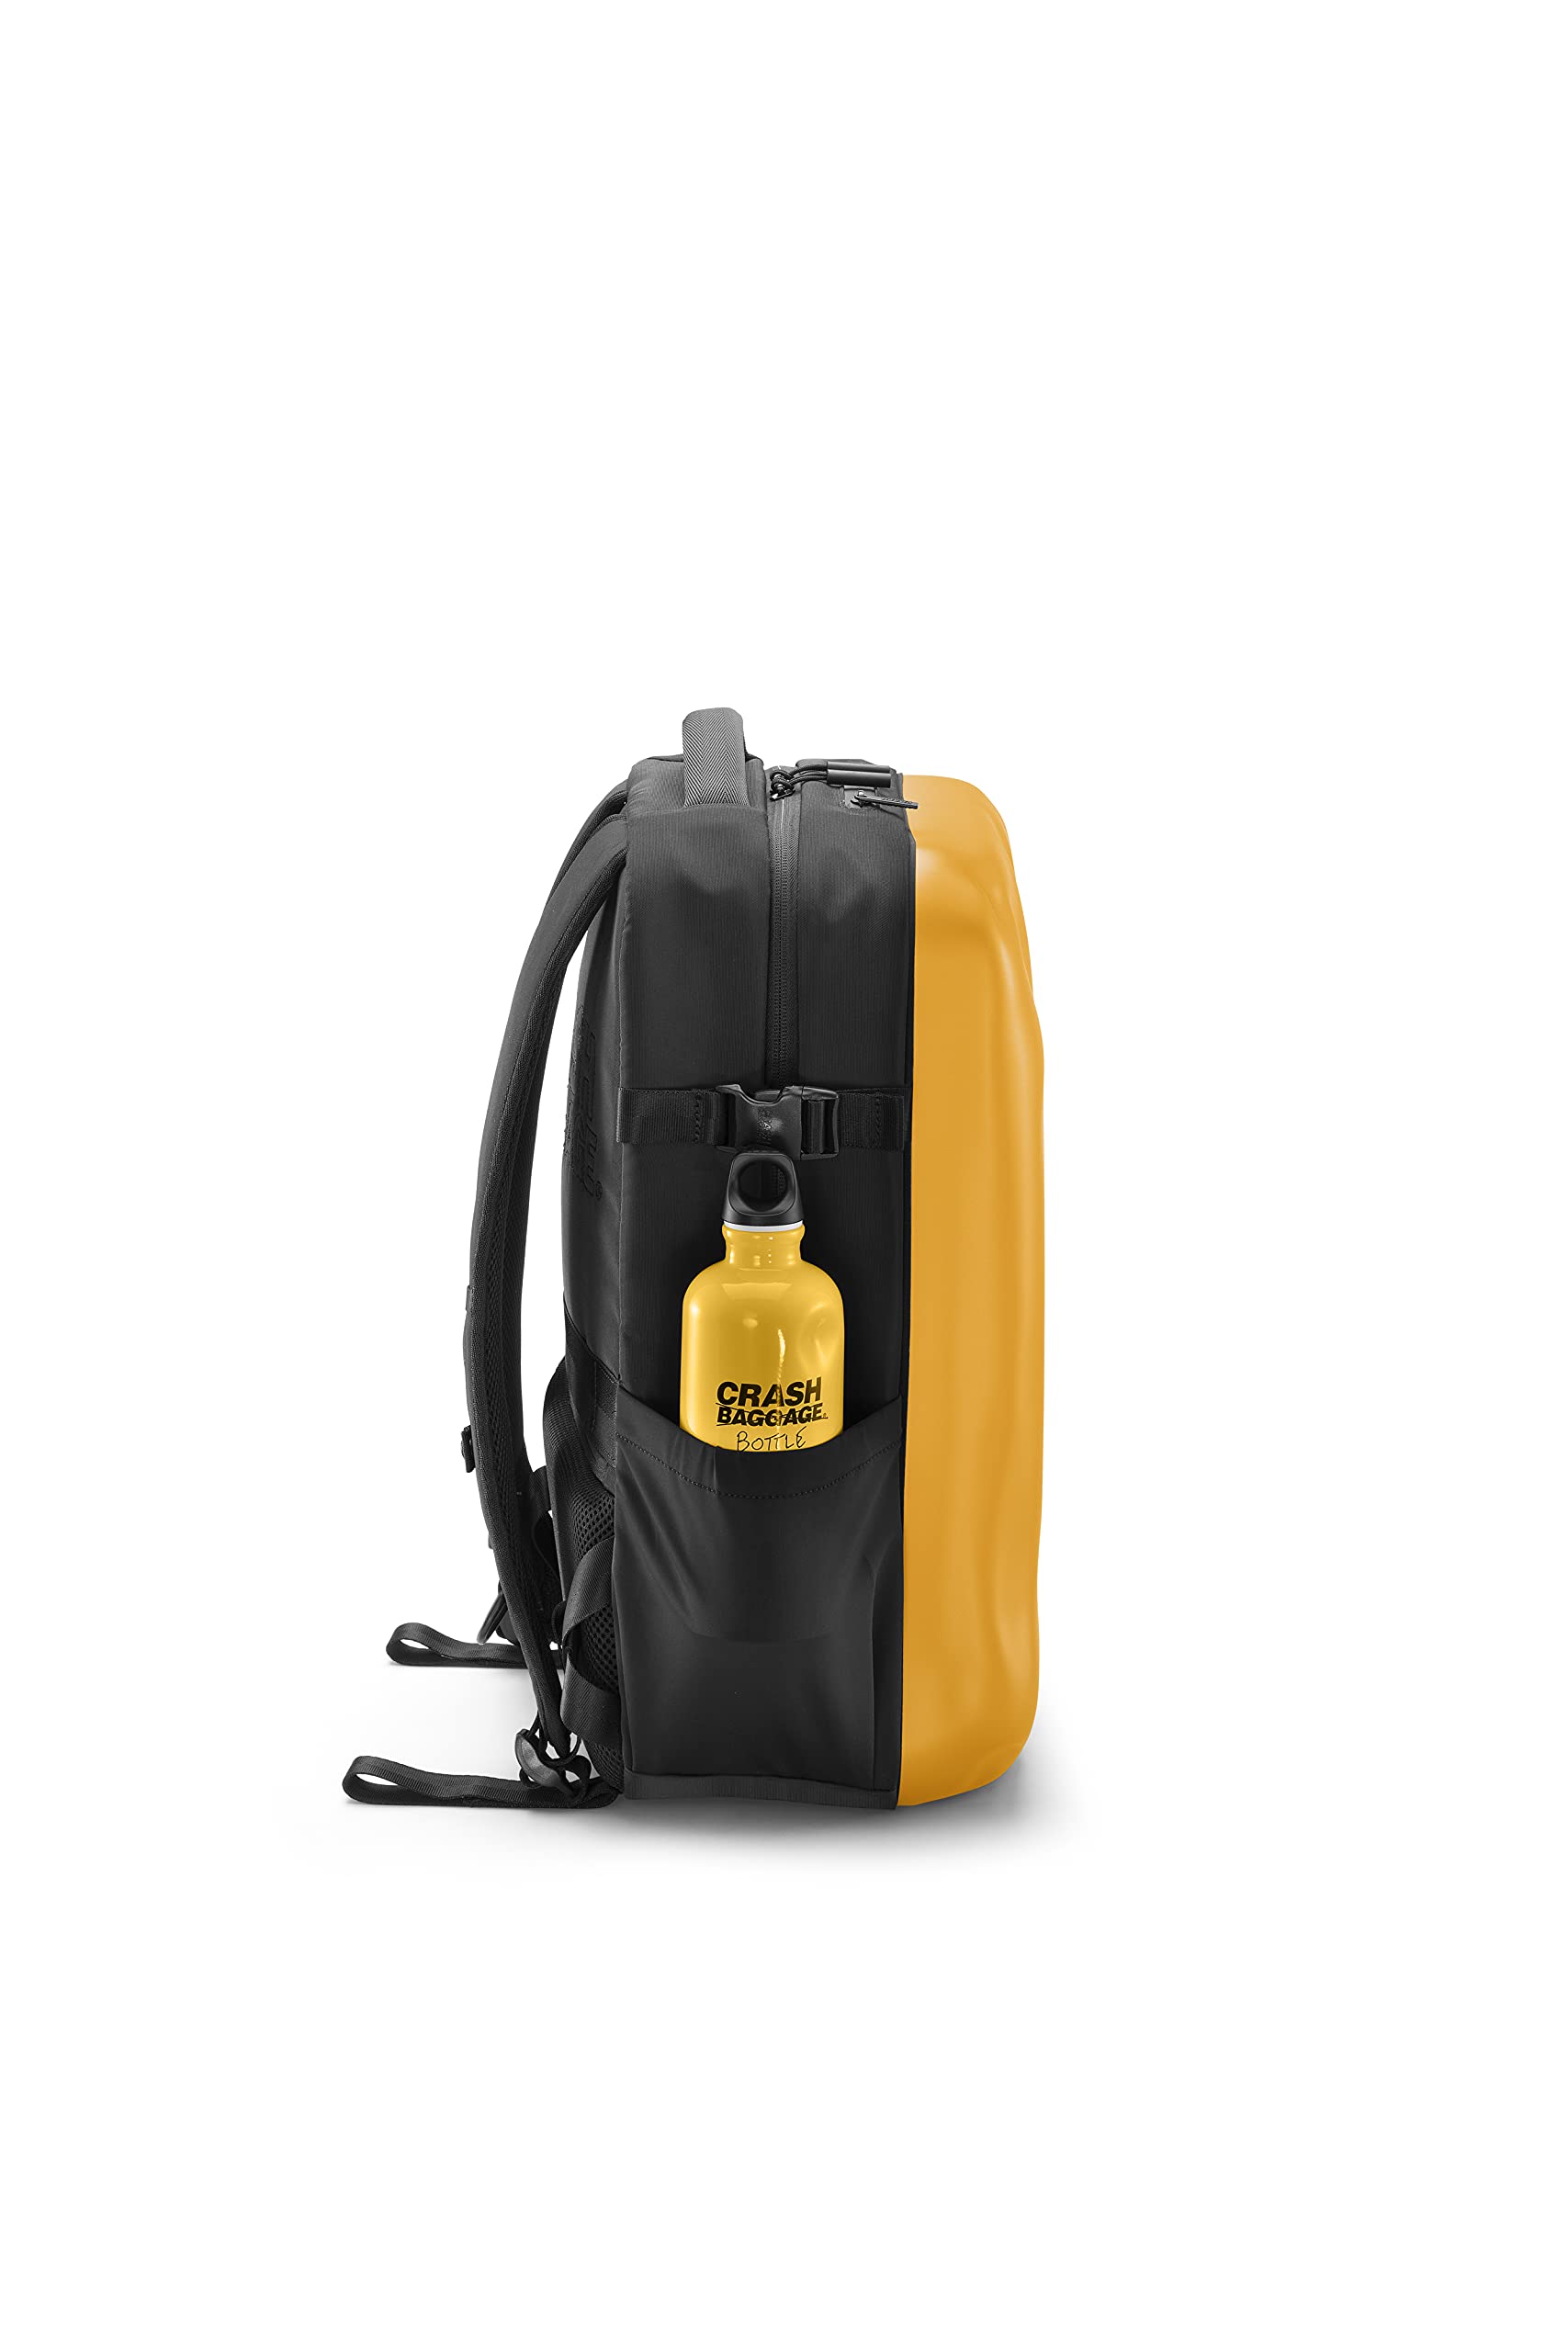 CRASH BAGGAGE Iconic Backpack 46 x 32 x 20 cm | Yellow